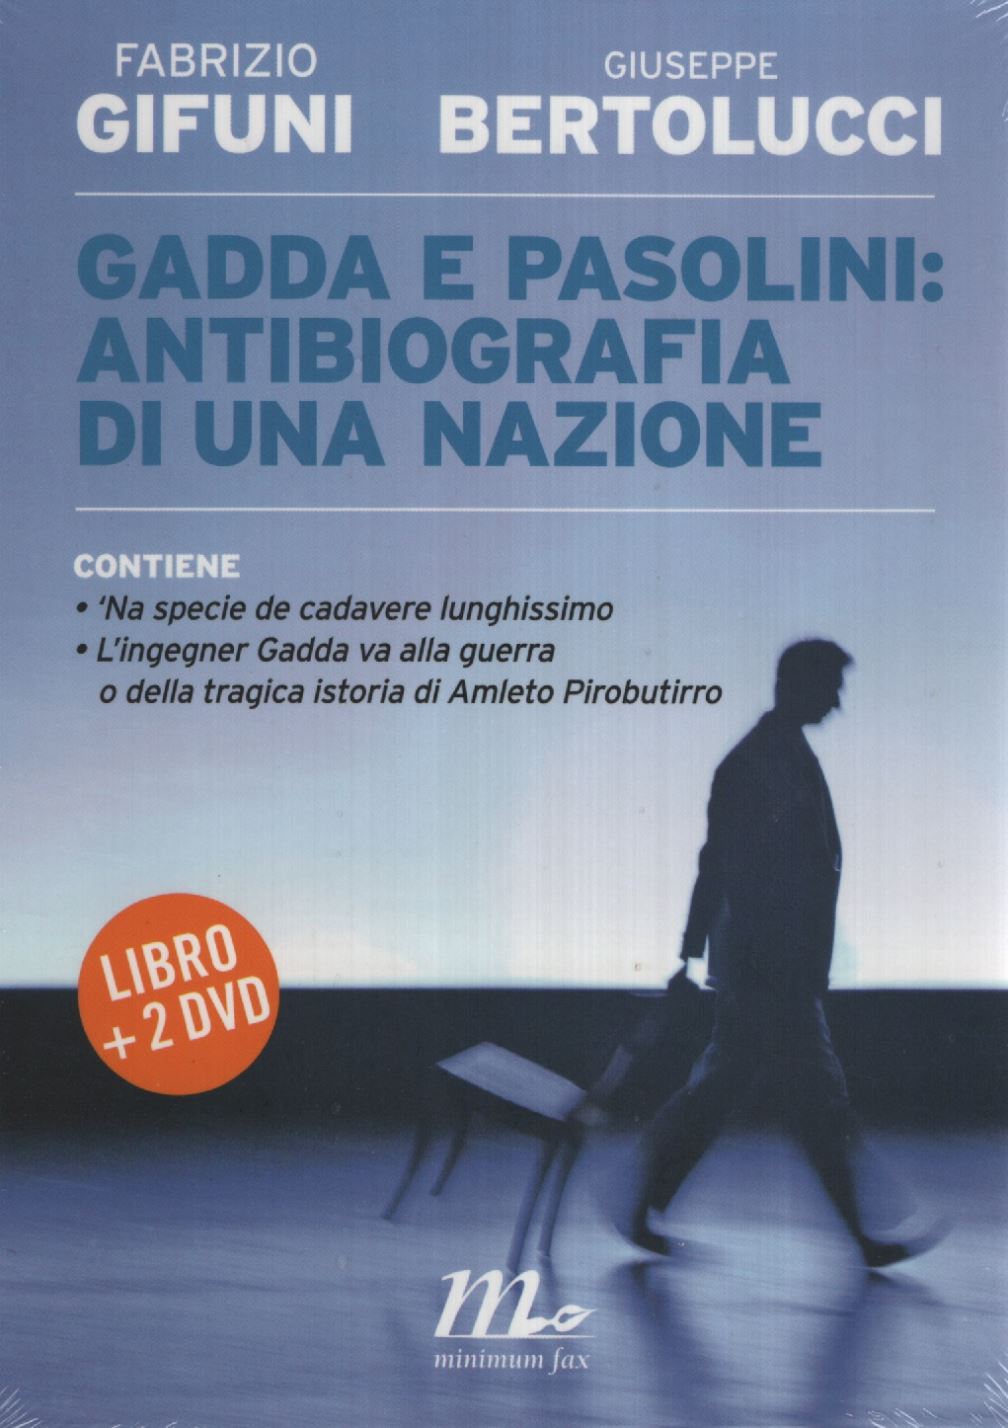 Libri Fabrizio Gifuni / Giuseppe Bertolucci - Gadda E Pasolini: Antibiografia Di Una Nazione. Con 2 DVD NUOVO SIGILLATO, EDIZIONE DEL 25/01/2012 SUBITO DISPONIBILE